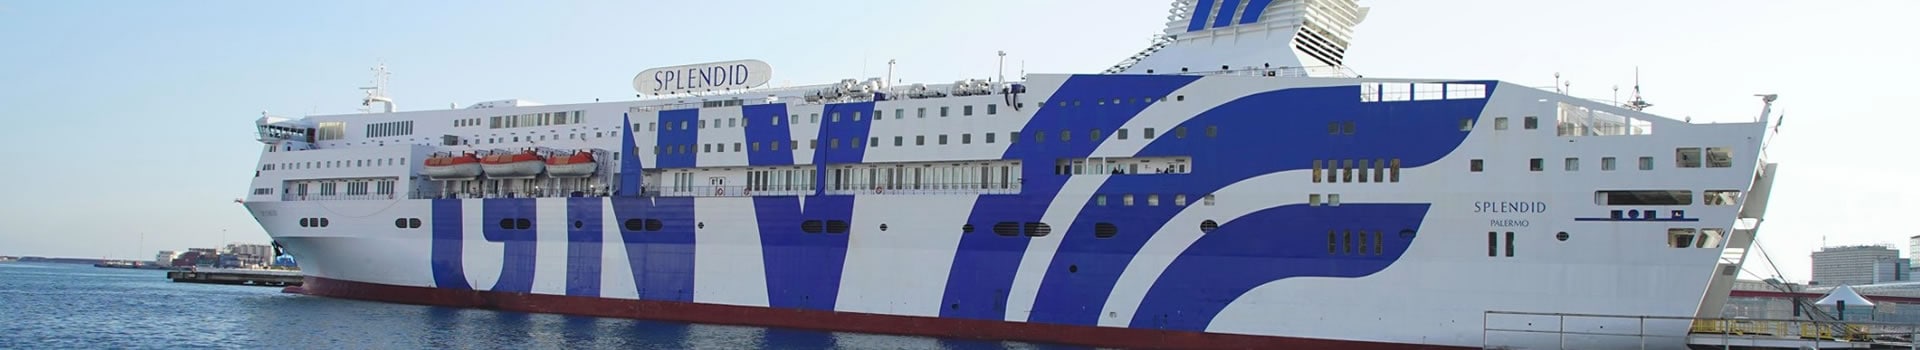 Las mejores ofertas de Ferry y barcos de Grandi Navi Veloci